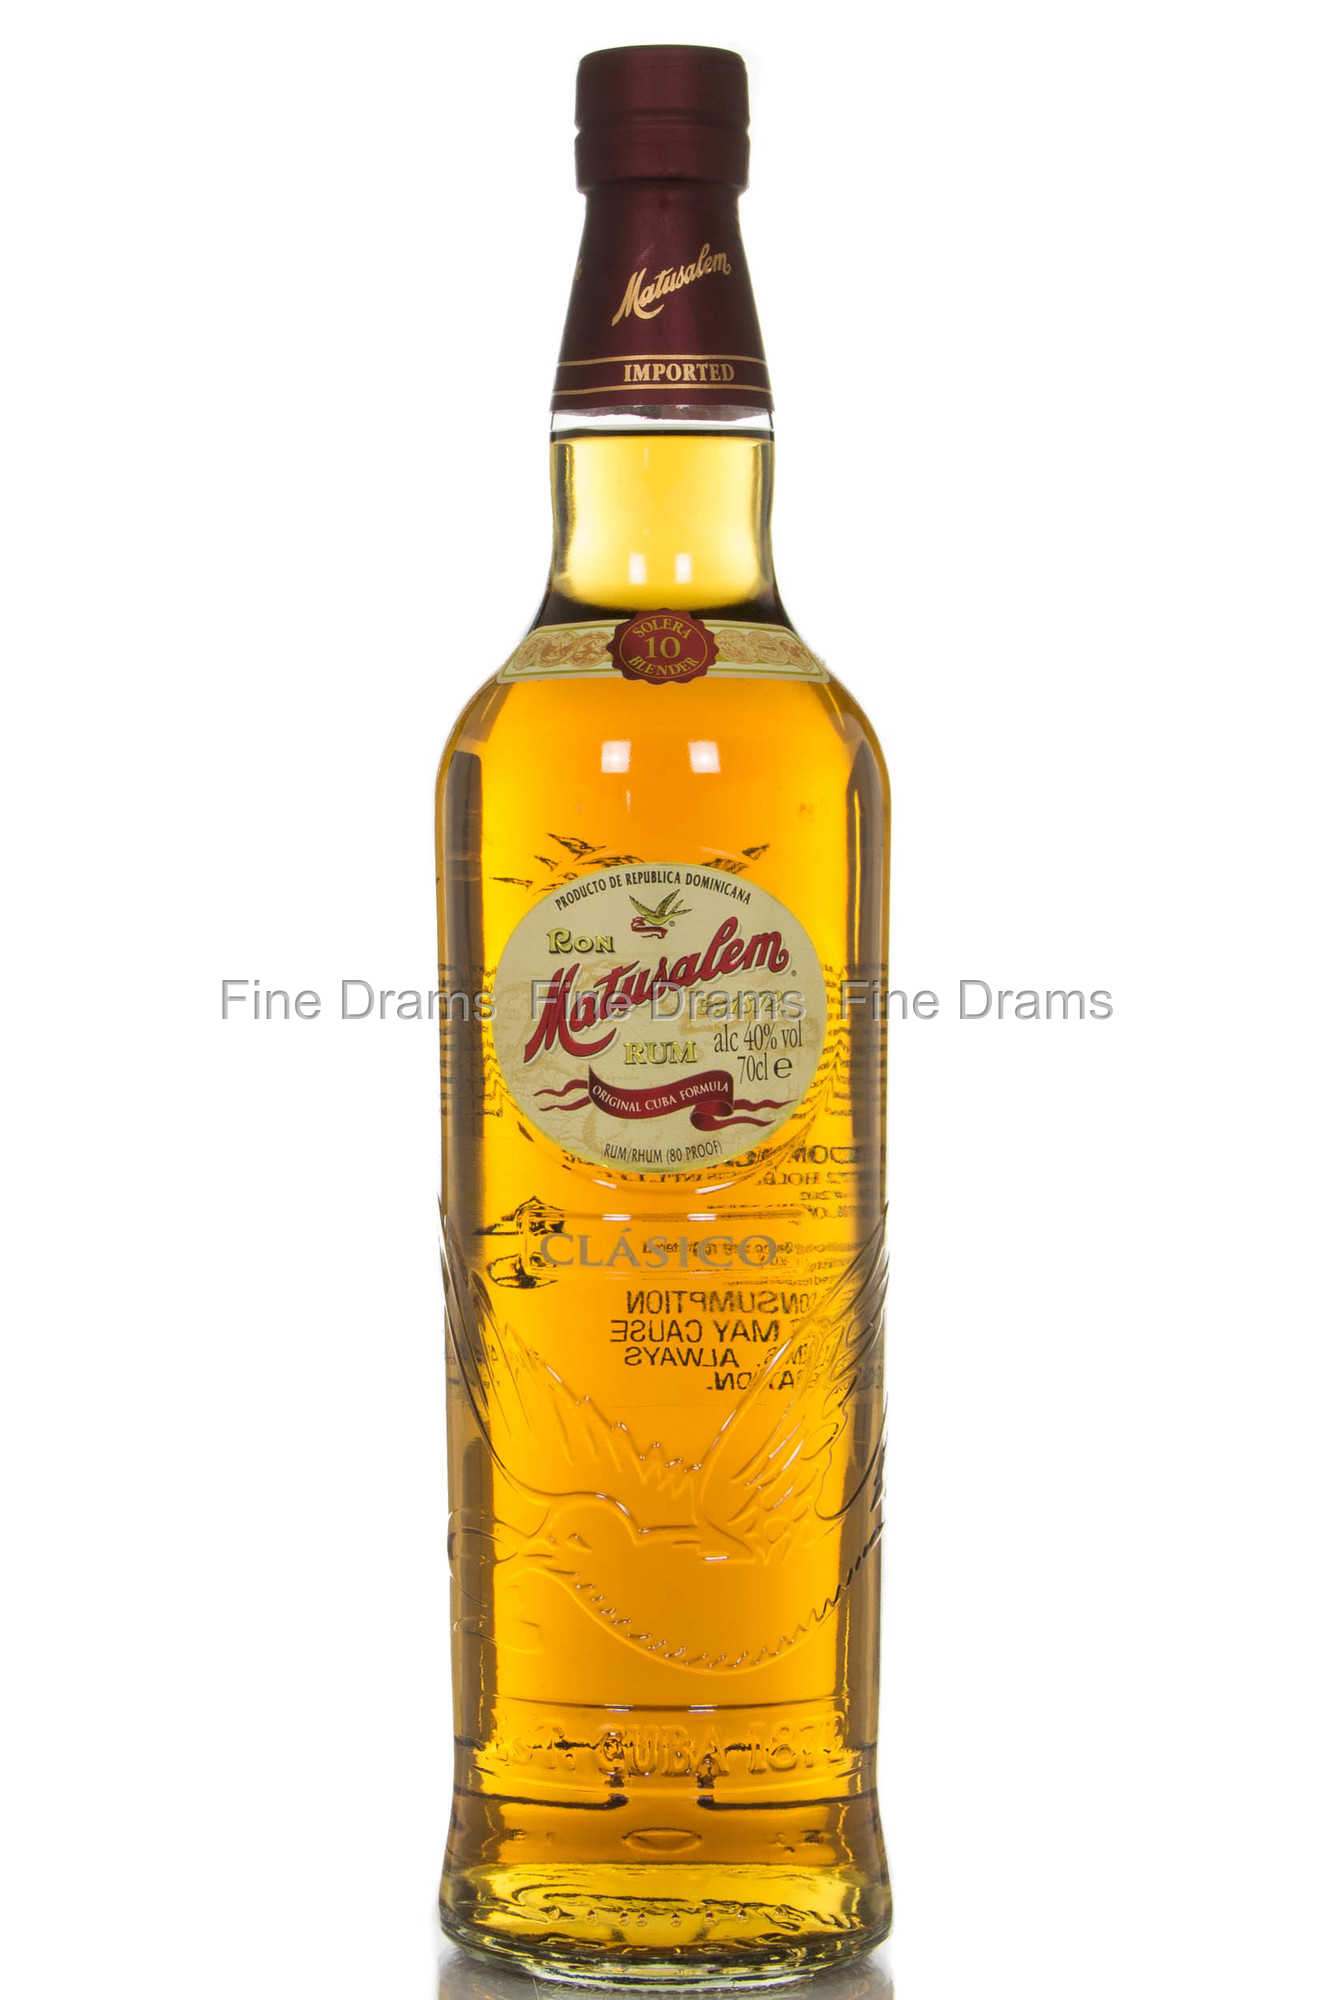 Matusalem Gran Reserva 15 Year Aged Rum Dominican Republic Spirits Review